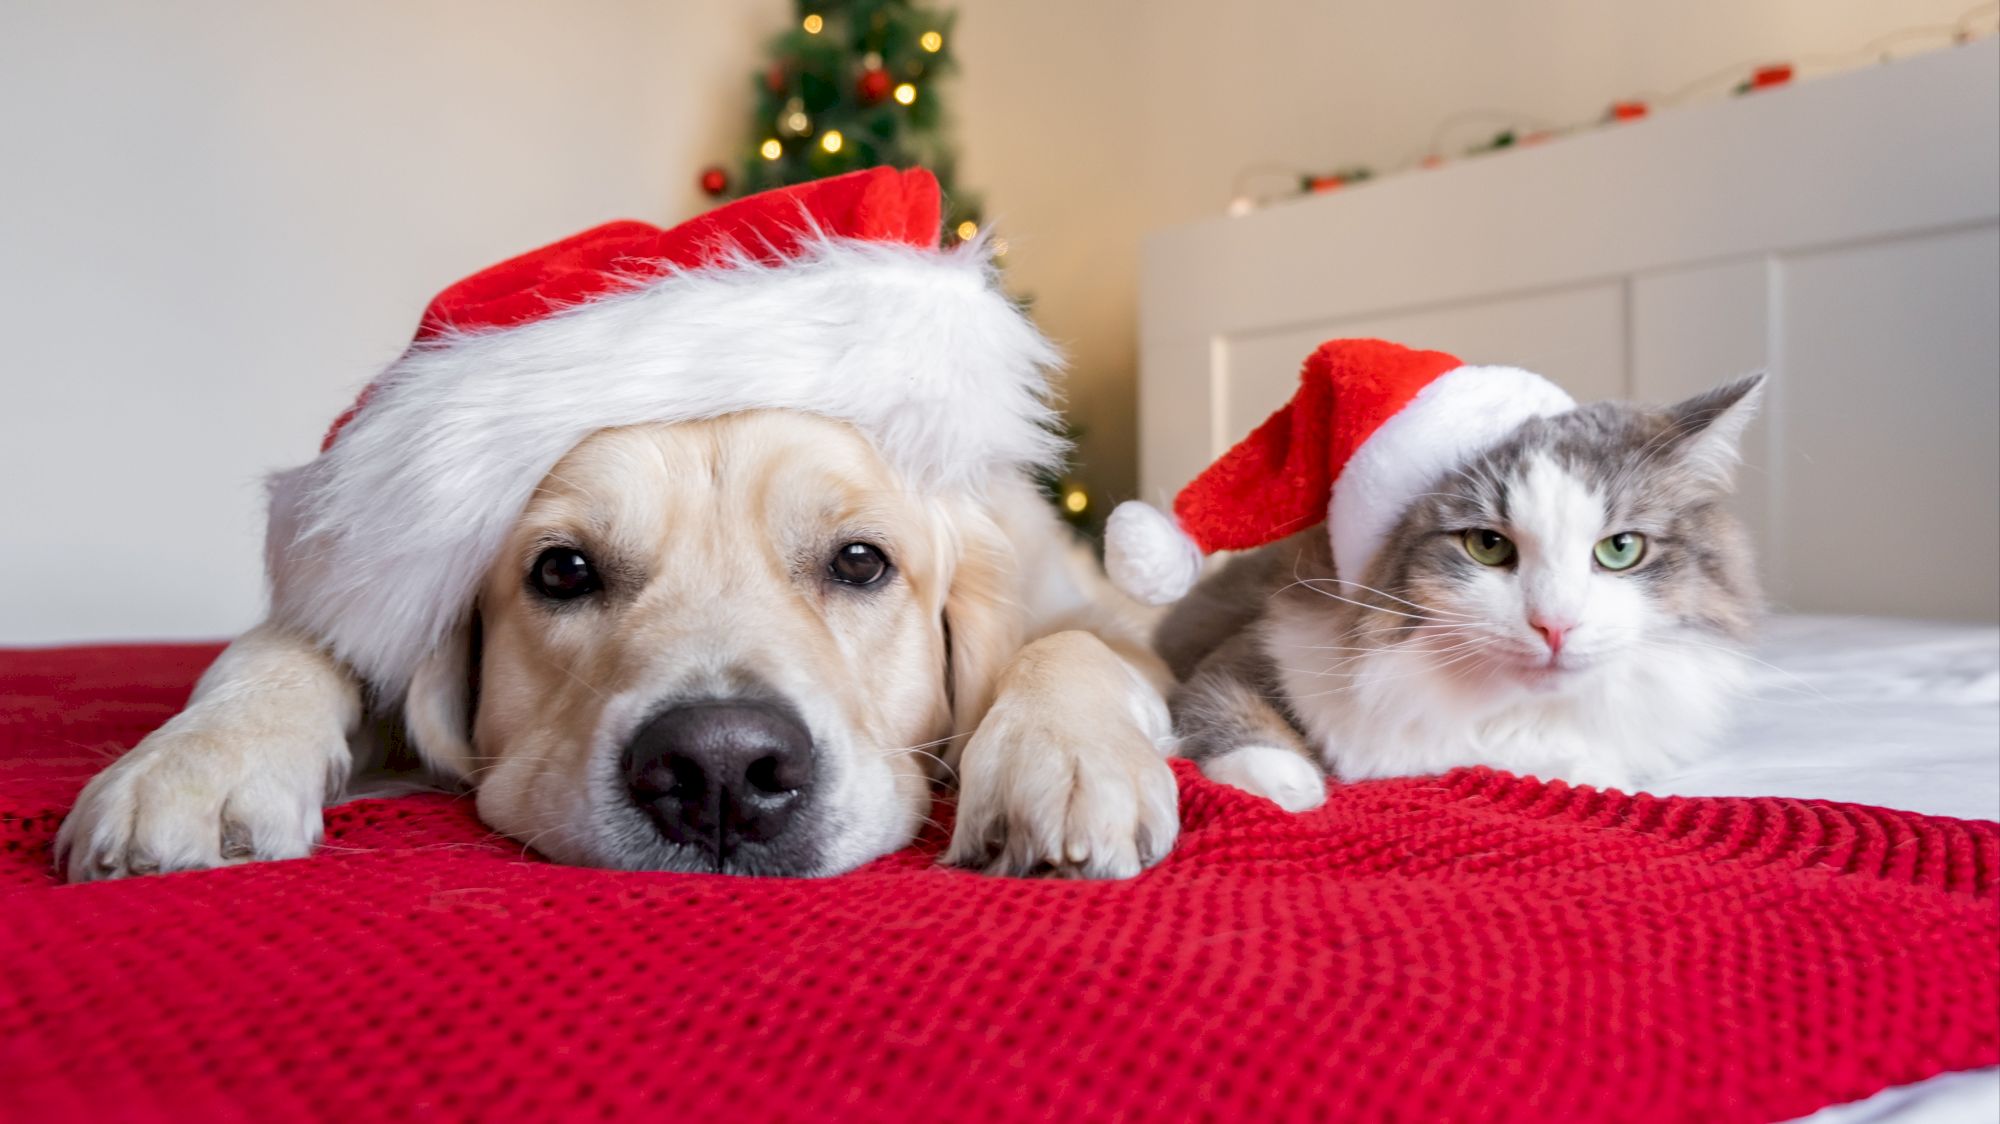 Le cadeau de Noël idéal pour votre chat